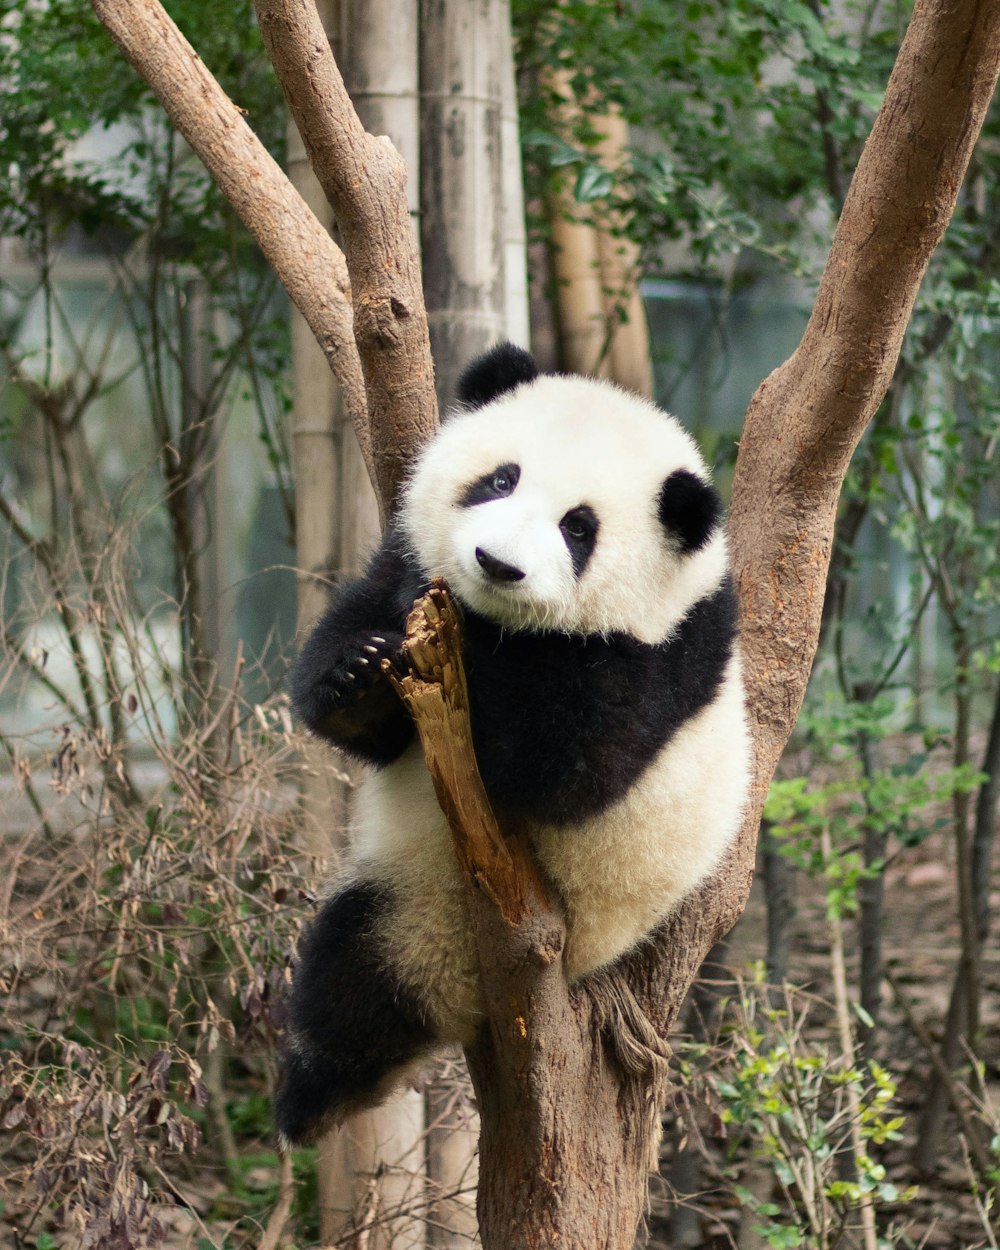 panda bear on brown tree branch during daytime